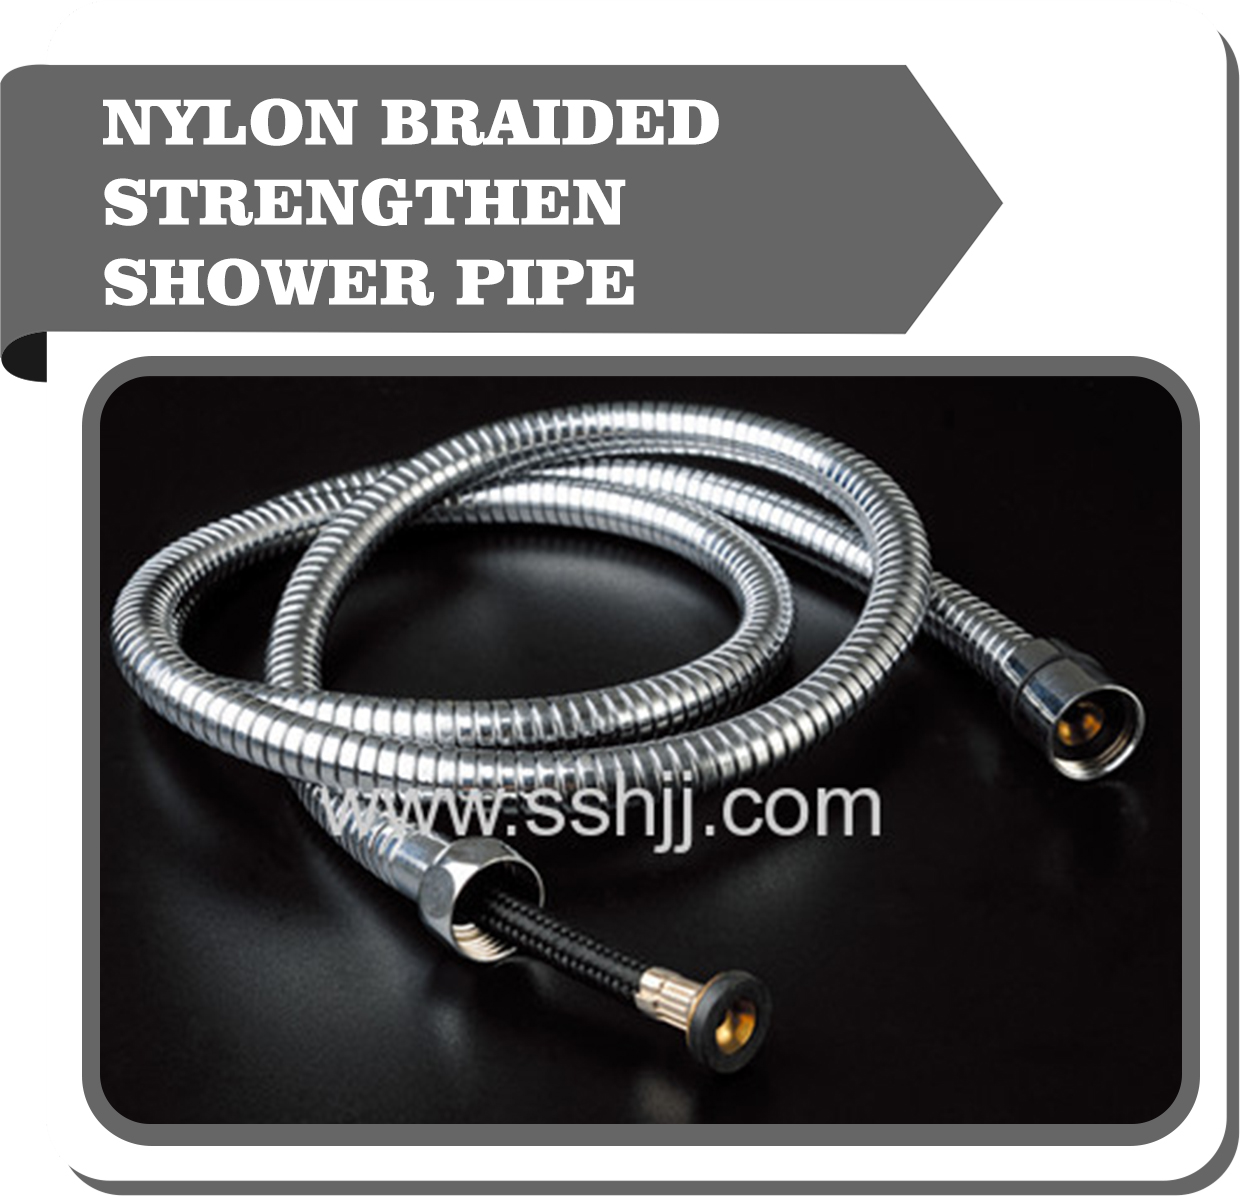 Nylon braided strengthen shower hose